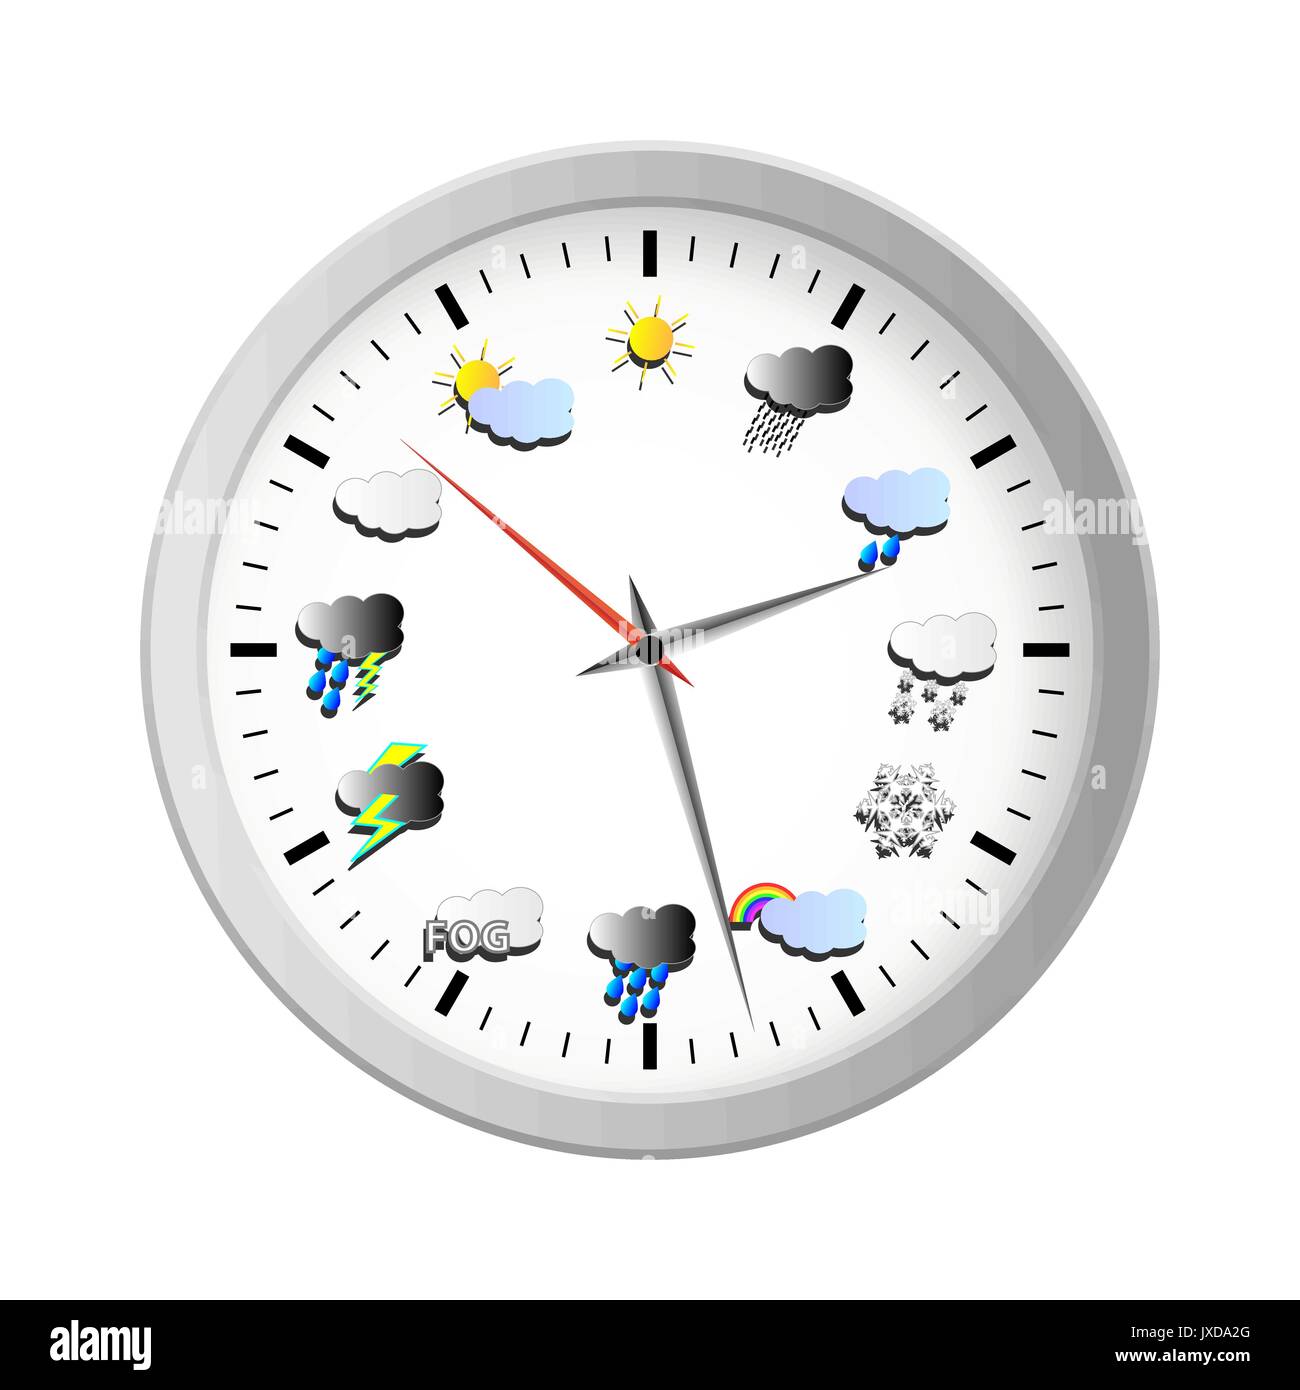 Horloge météo avec des icônes au lieu d'heures Image Vectorielle Stock -  Alamy